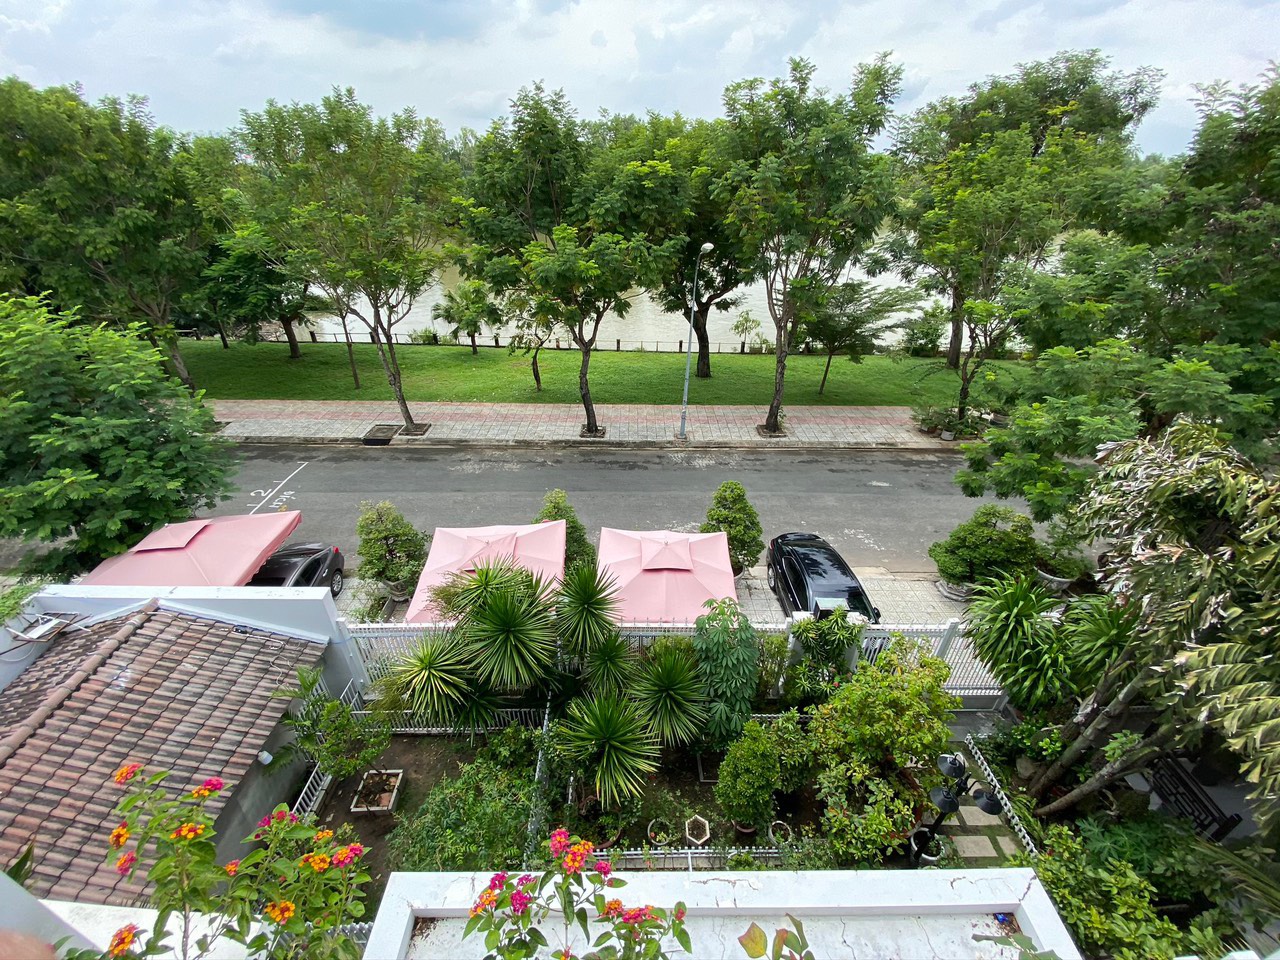 Bán nhà biệt thự mặt tiền sông khu dân cư ven sông Tân Phong, quận 7